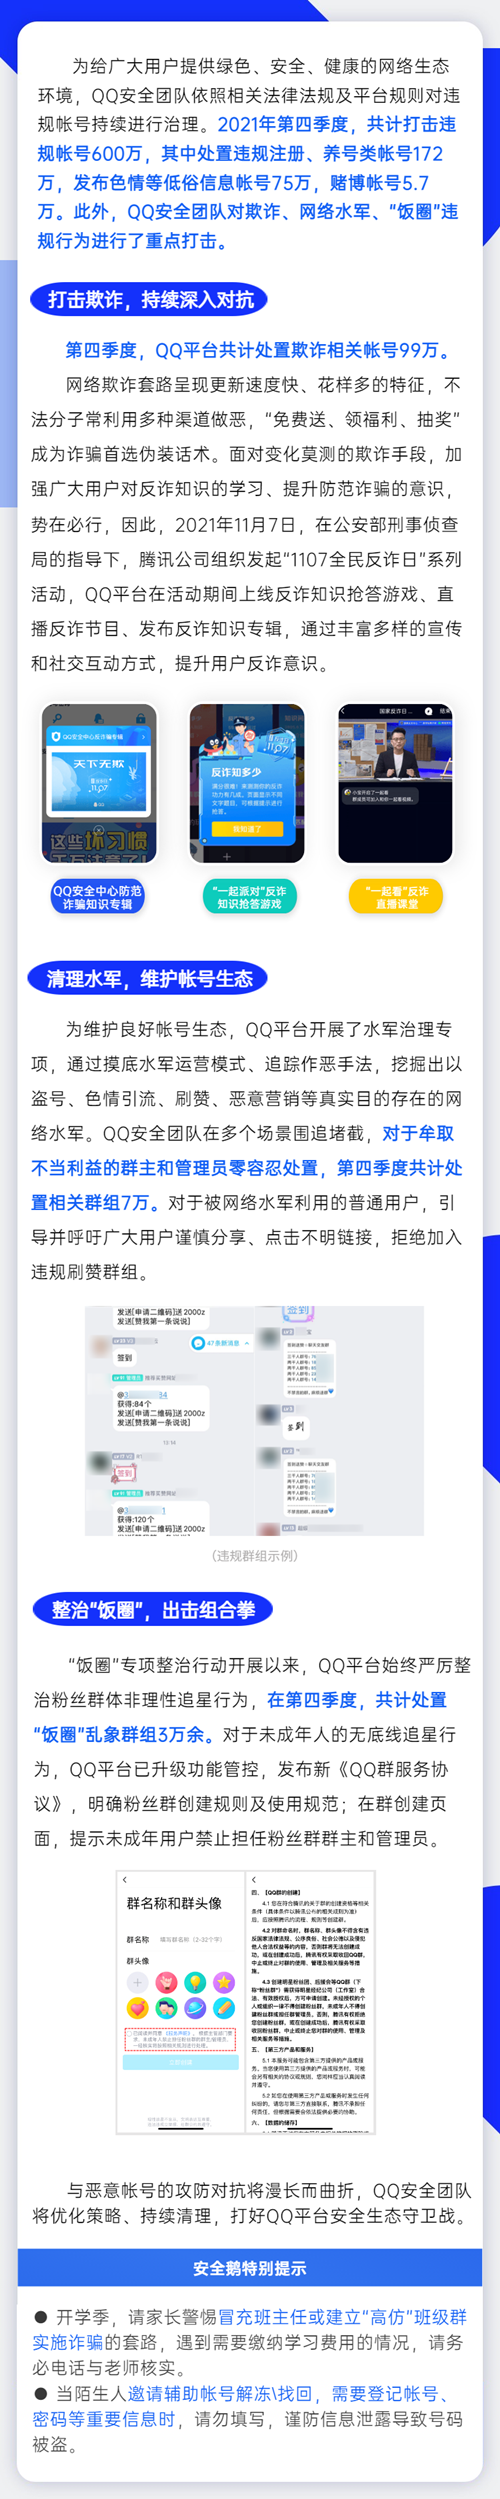 腾讯QQ打击违规账号600万